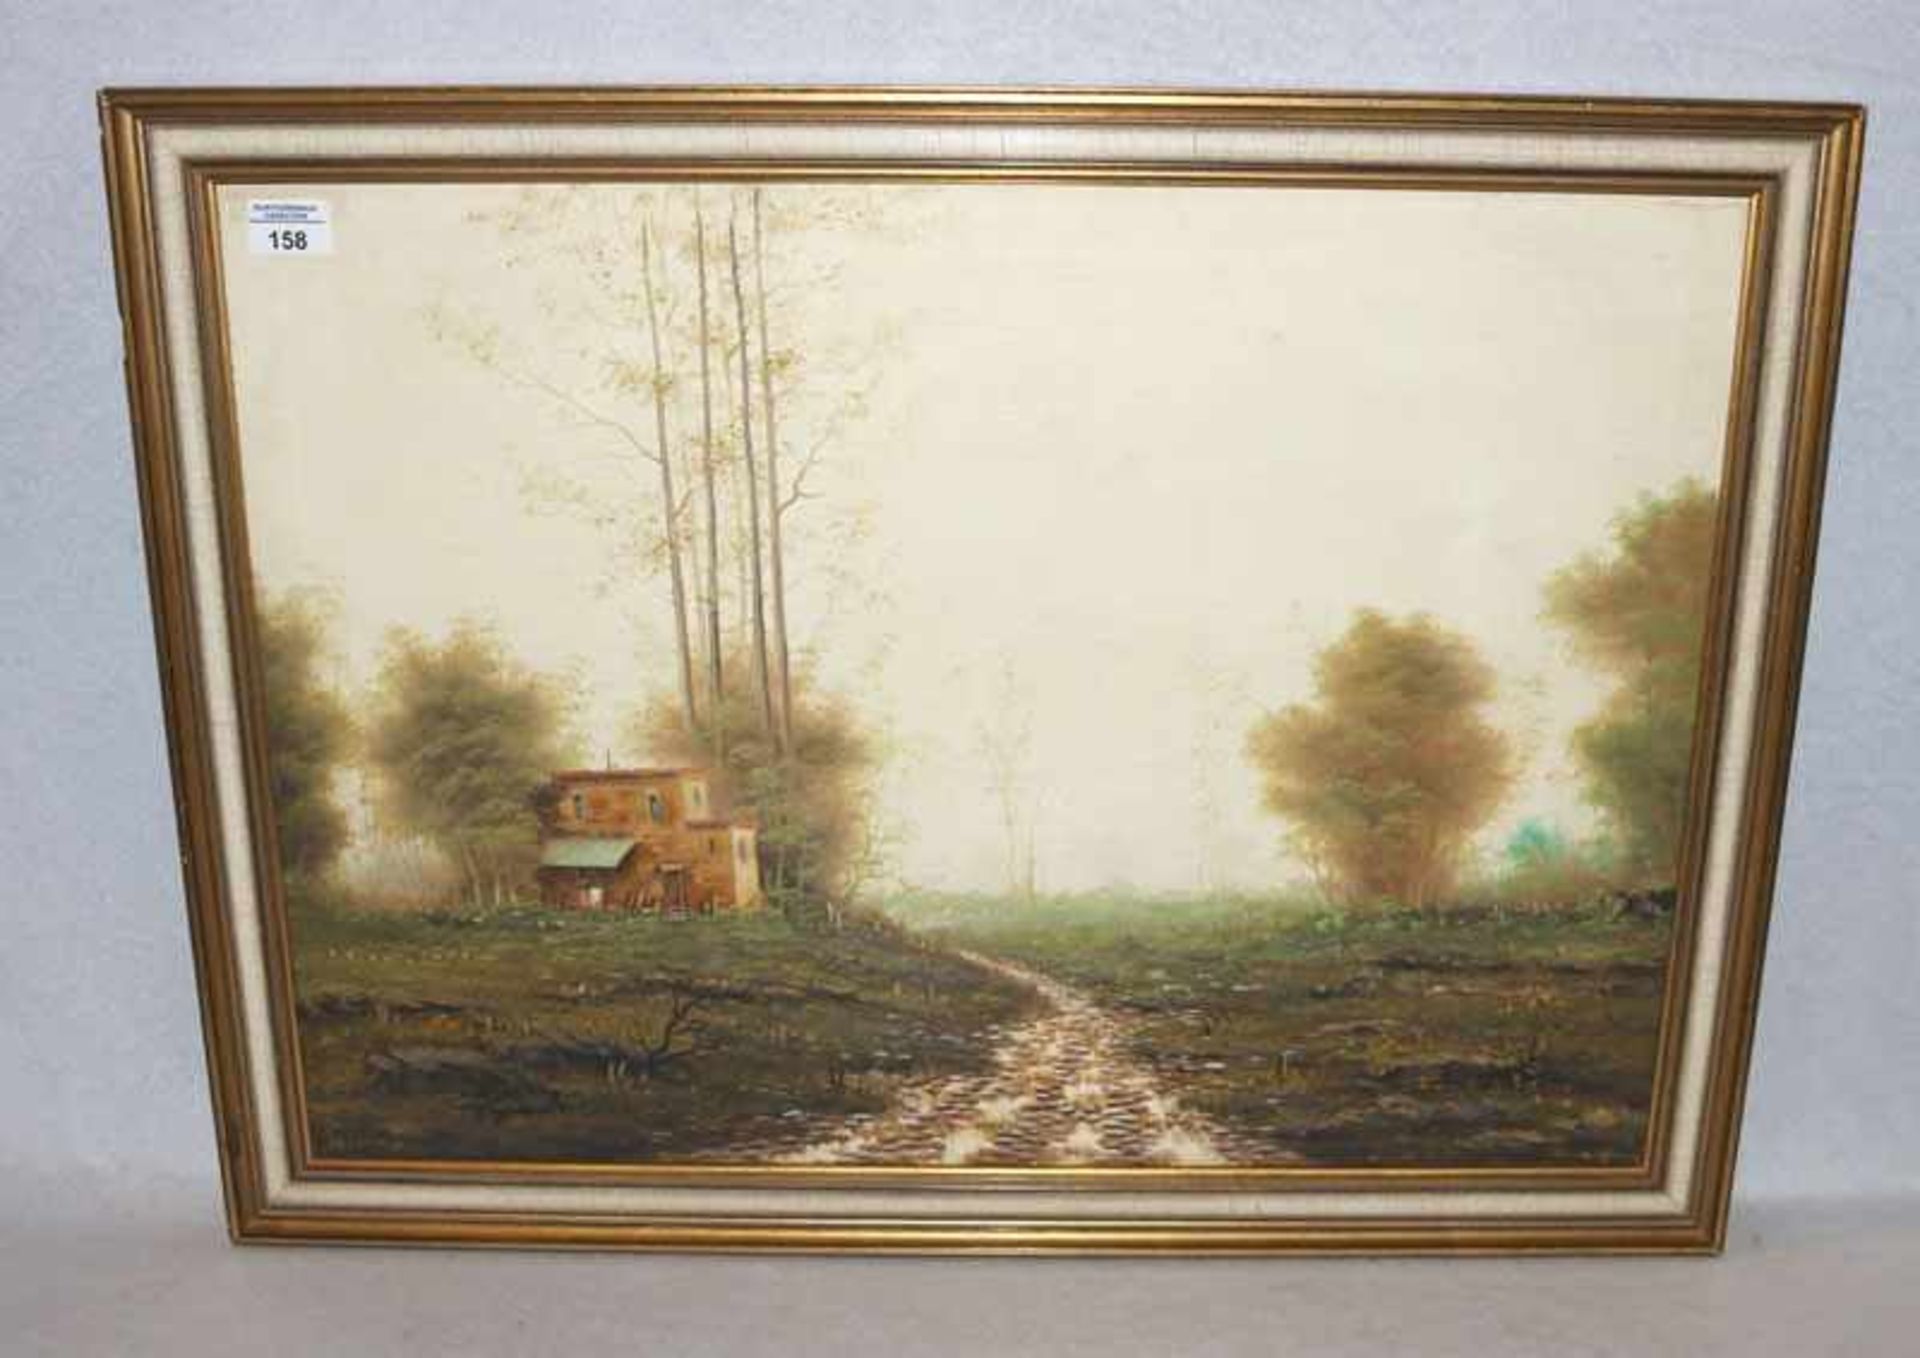 Gemälde ÖL/LW 'Herbstlandschaft mit Haus', undeutlich signiert, gerahmt, Rahmen leicht bestossen,